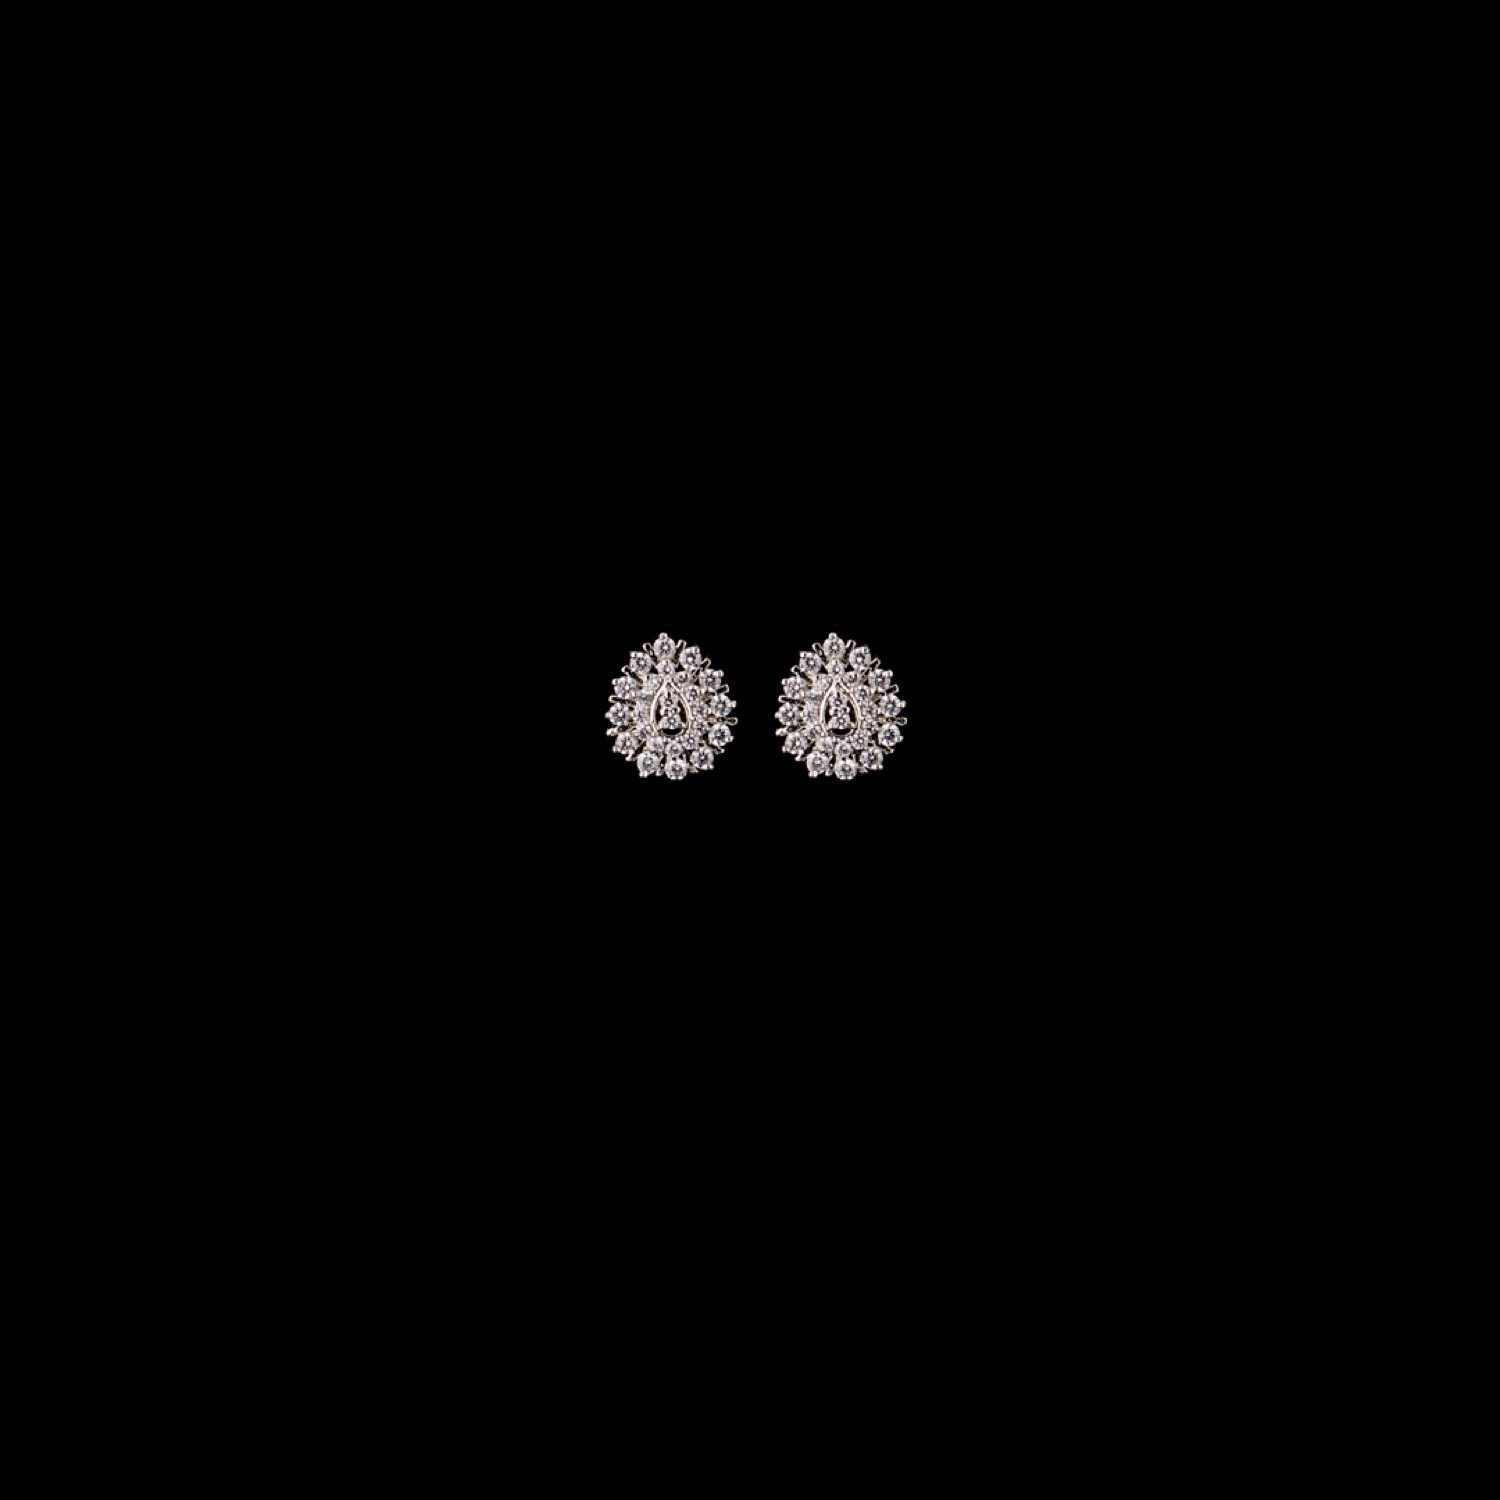 varam_earrings_102022_white_stone_studded_pear_shaped_silver_earrings_1-1